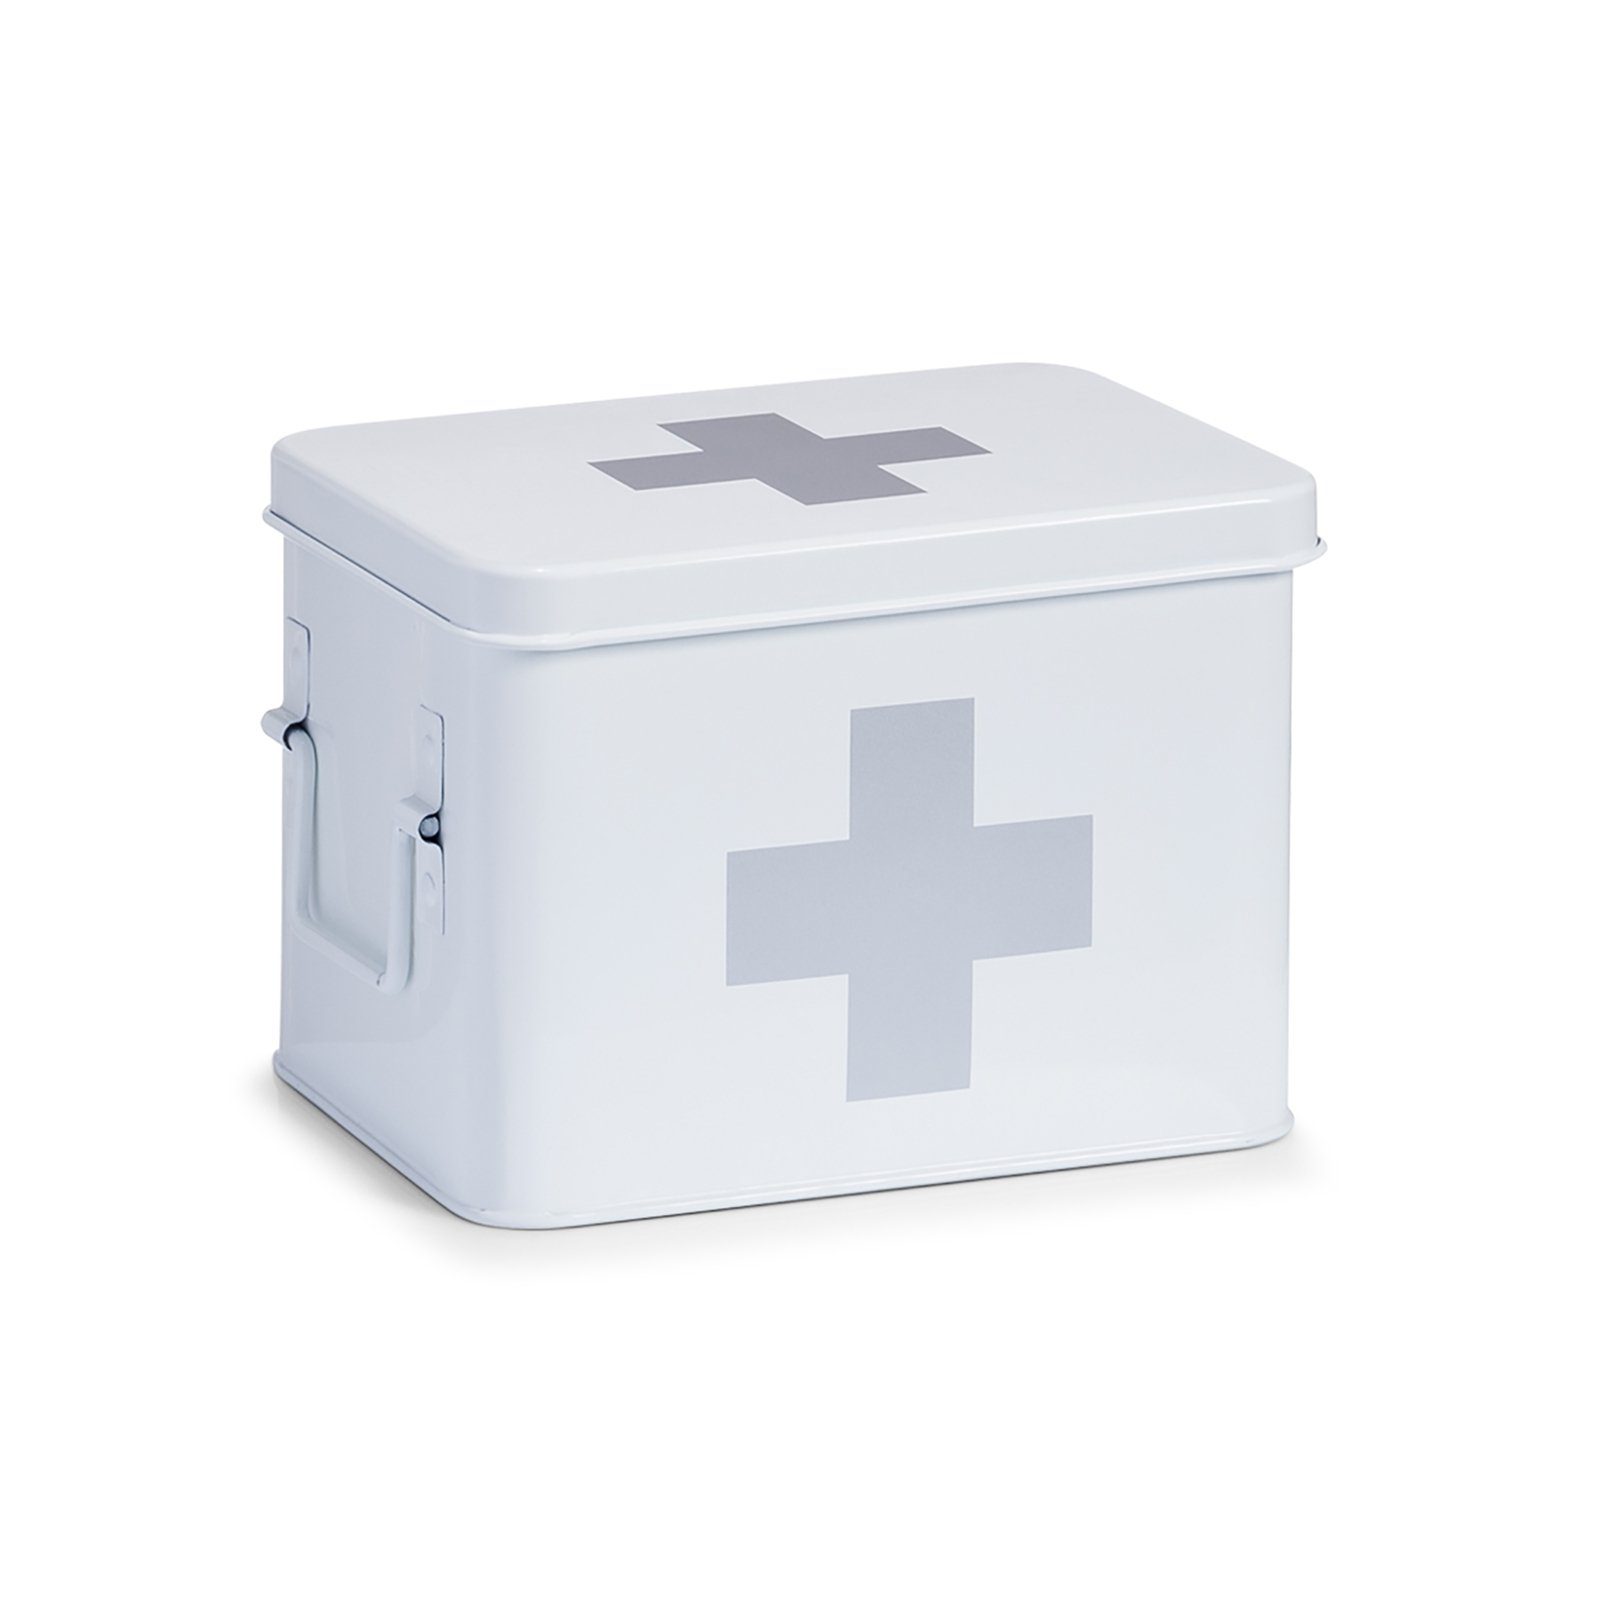 Weiß und Present entnehmbaren Medizinschrank verfügt Metalleinsatz über Fächereinteilung Medizinbox 4 Verbandskasten, Zeller